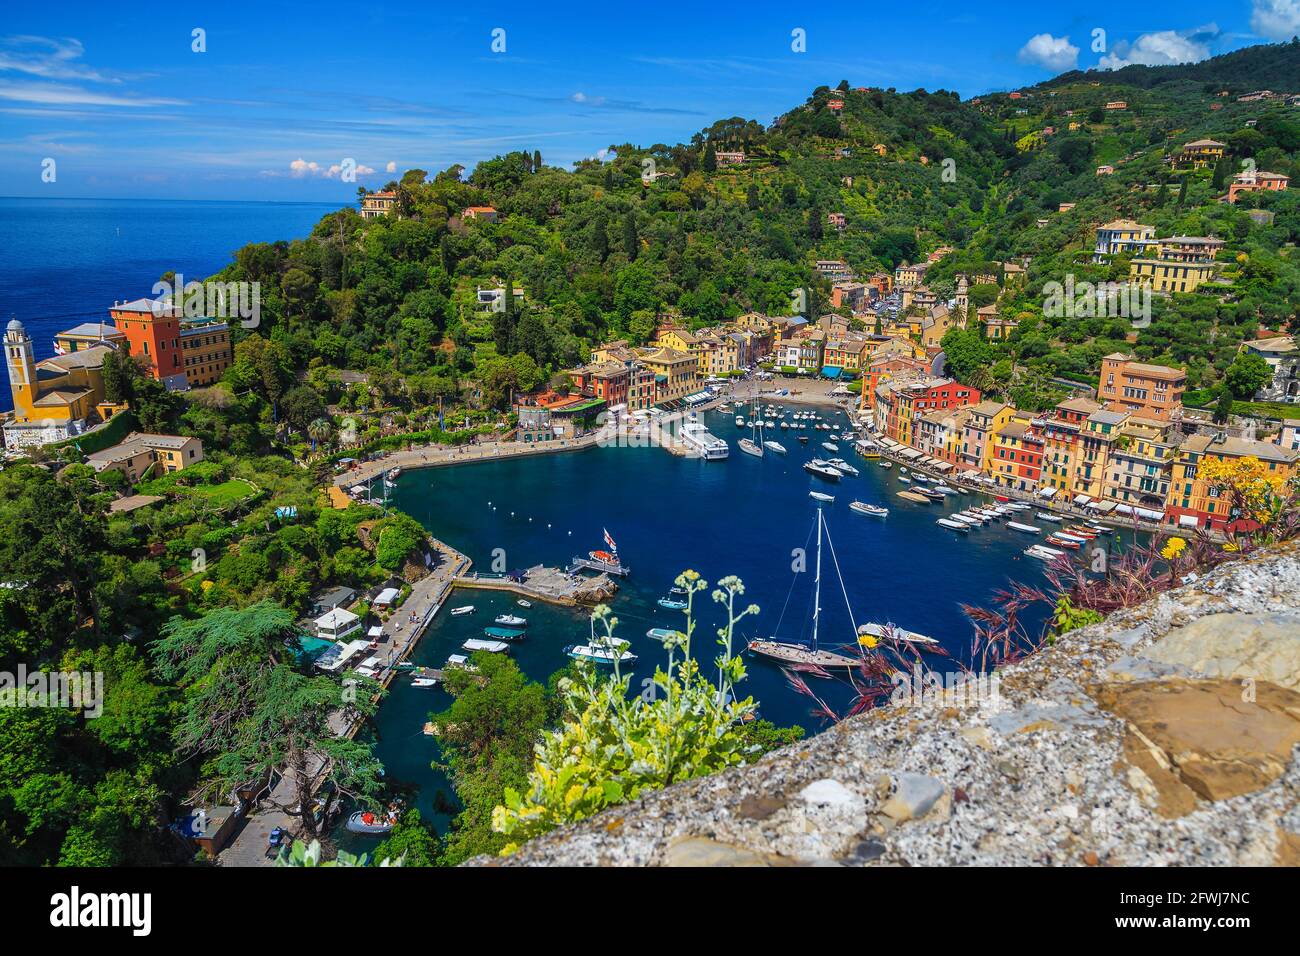 Berühmte Urlaub und Reise Lage in Ligurien.Portofino mittelmeer-Resort Blick mit bunten Gebäuden und Luxusbooten, Yachten von der Terrasse o Stockfoto